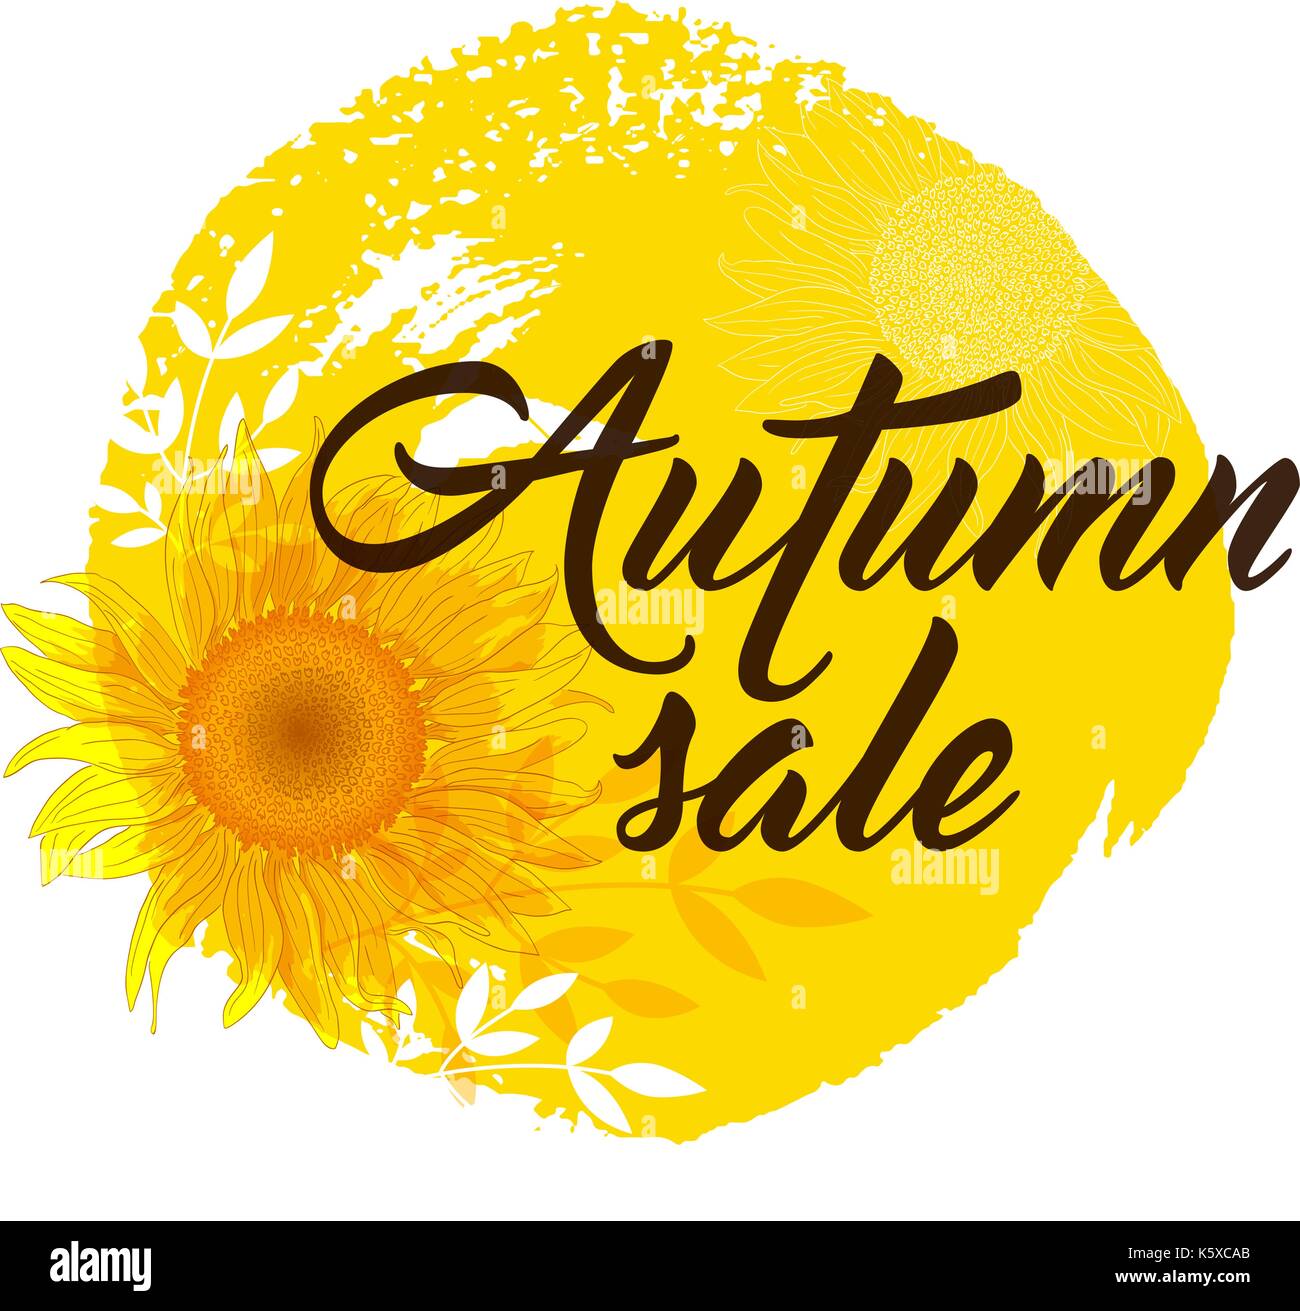 Arrière-plan de vente d'automne avec du jaune tournesol. 'Autumn sale' lettrage. Illustration de Vecteur